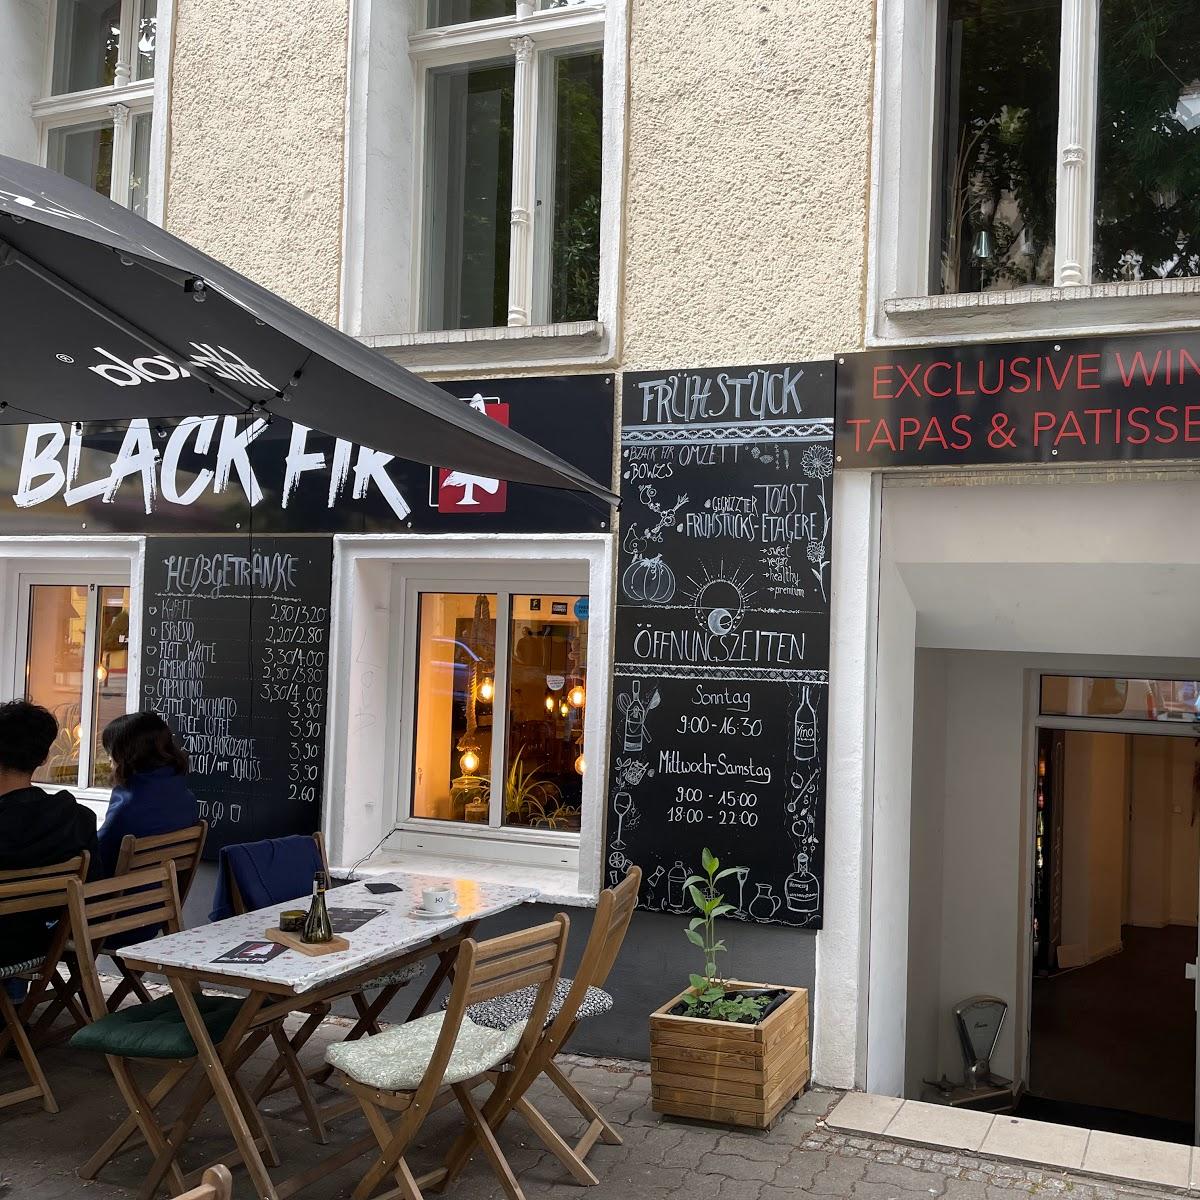 Restaurant "Black Fir" in Berlin